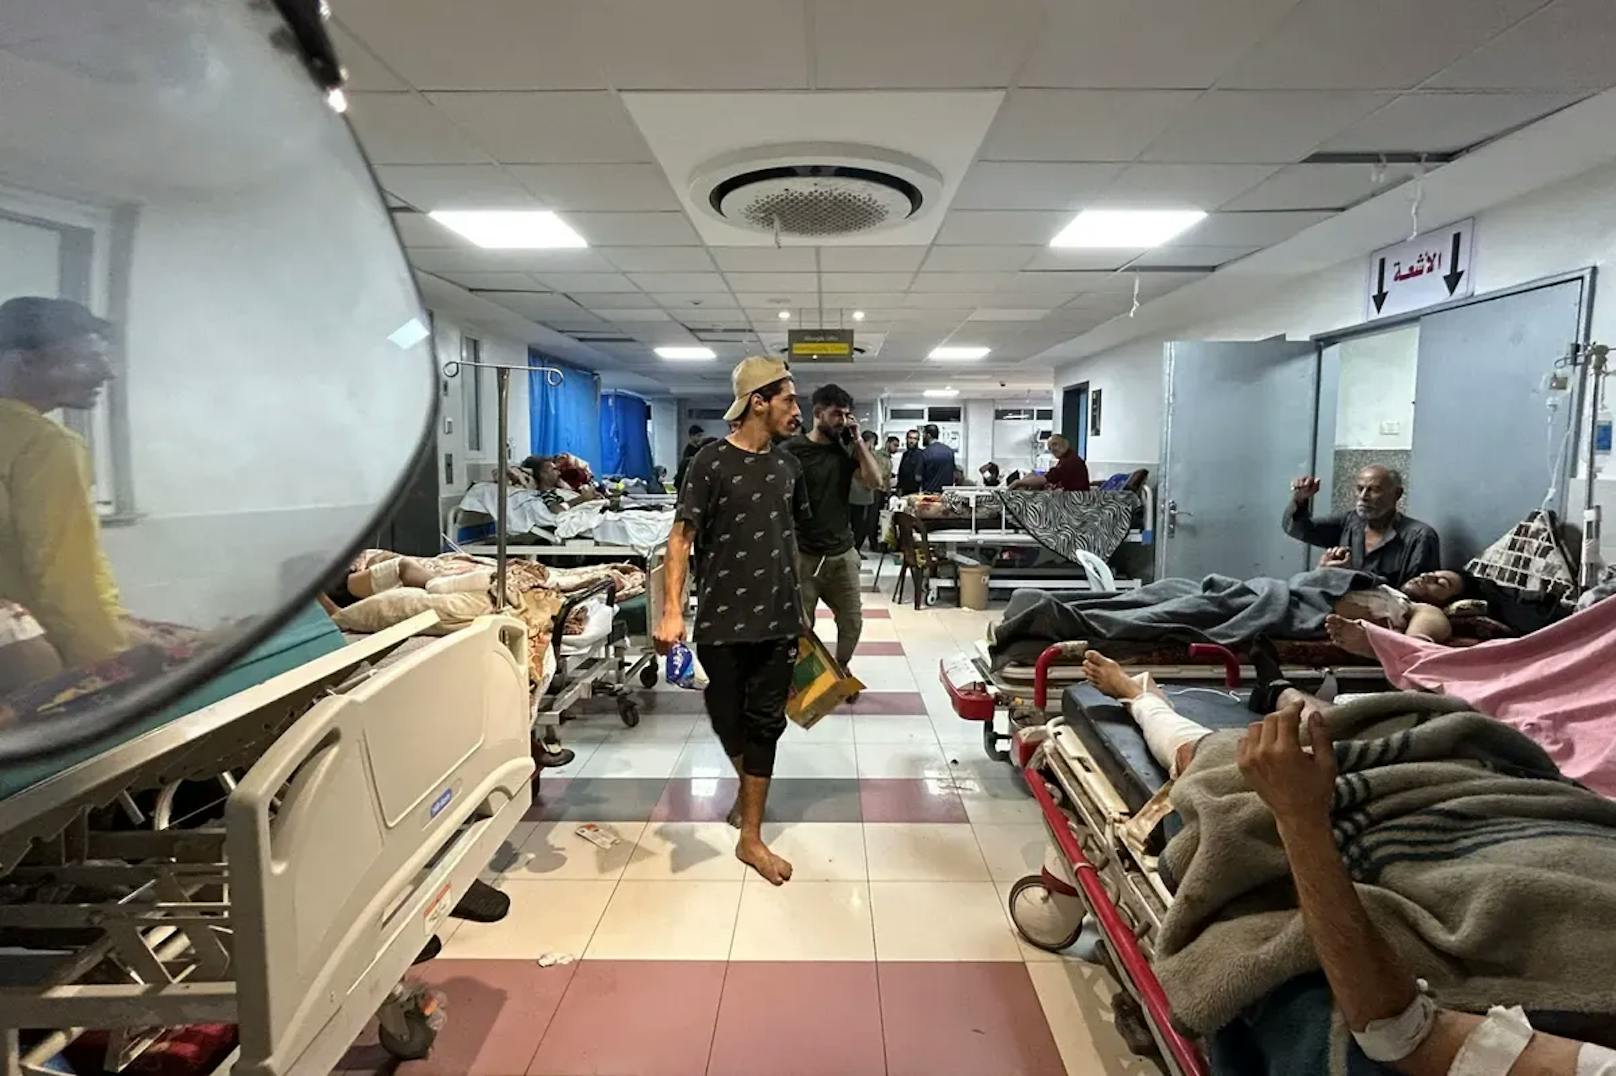 Die Weltgesundheitsorganisation sprach zuletzt von "entsetzlichen Zuständen" im Krankenhaus.